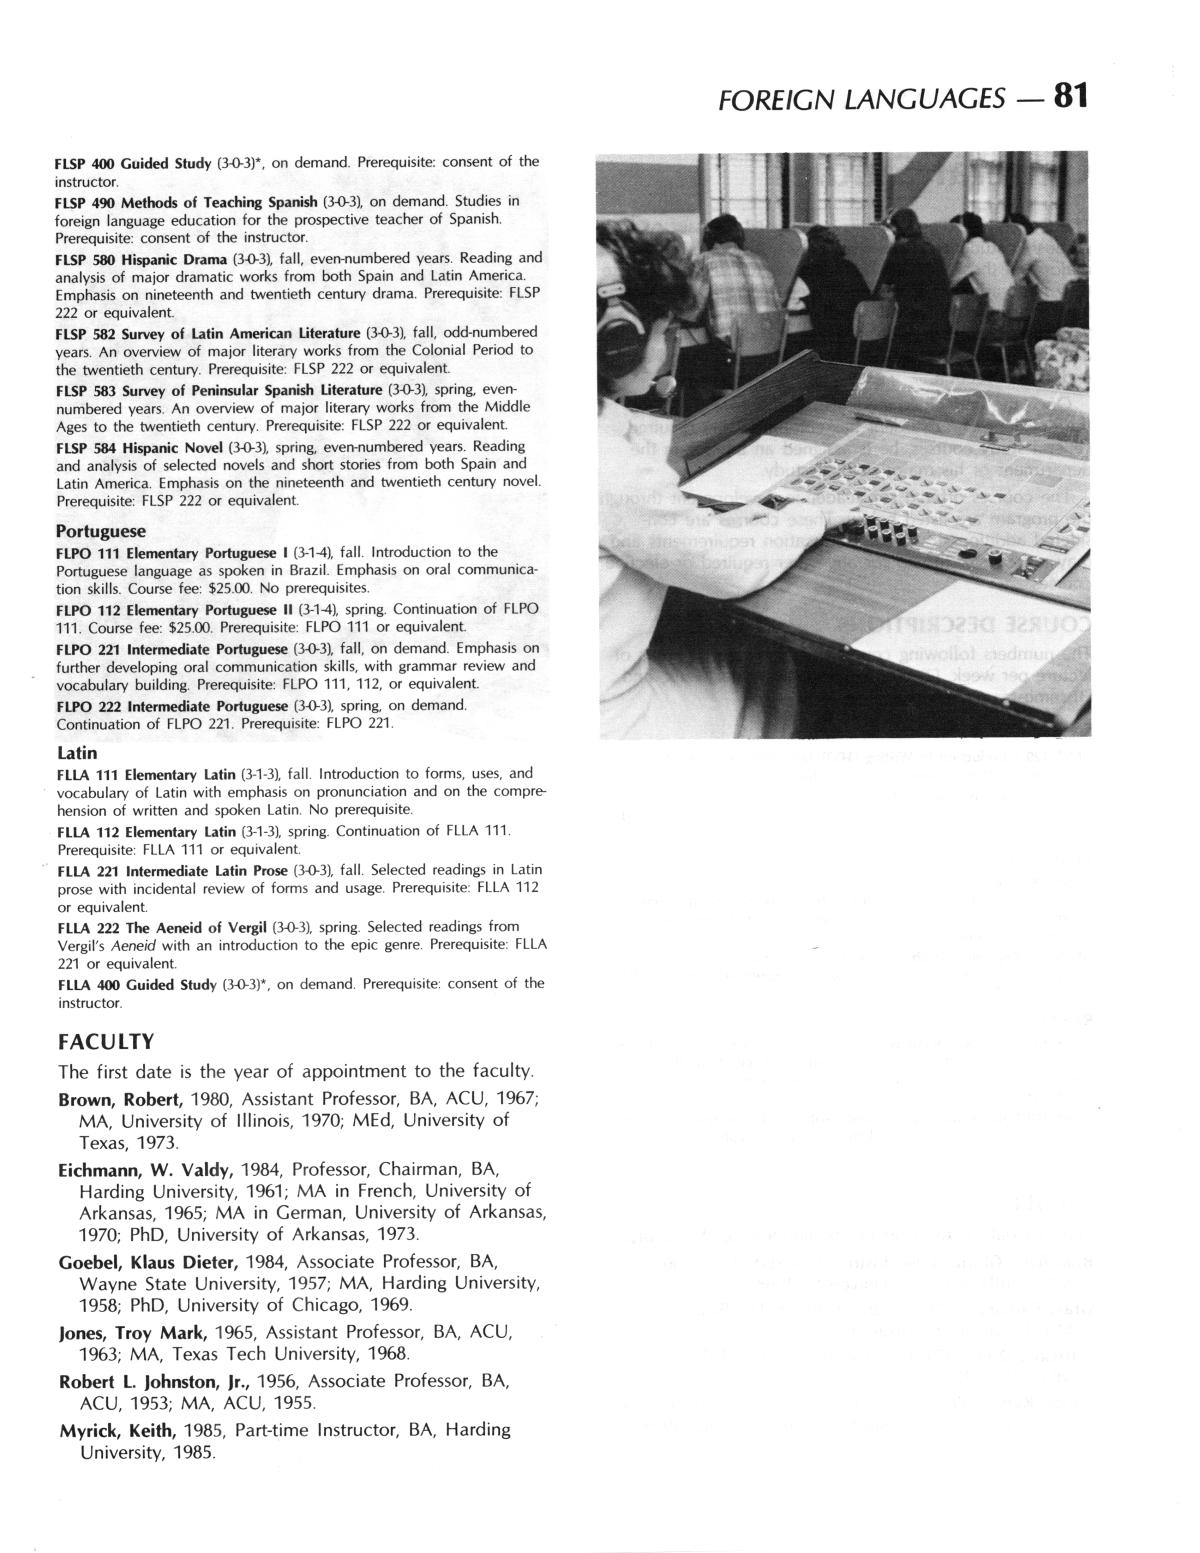 Catalog of Abilene Christian University, 1986-1987
                                                
                                                    81
                                                